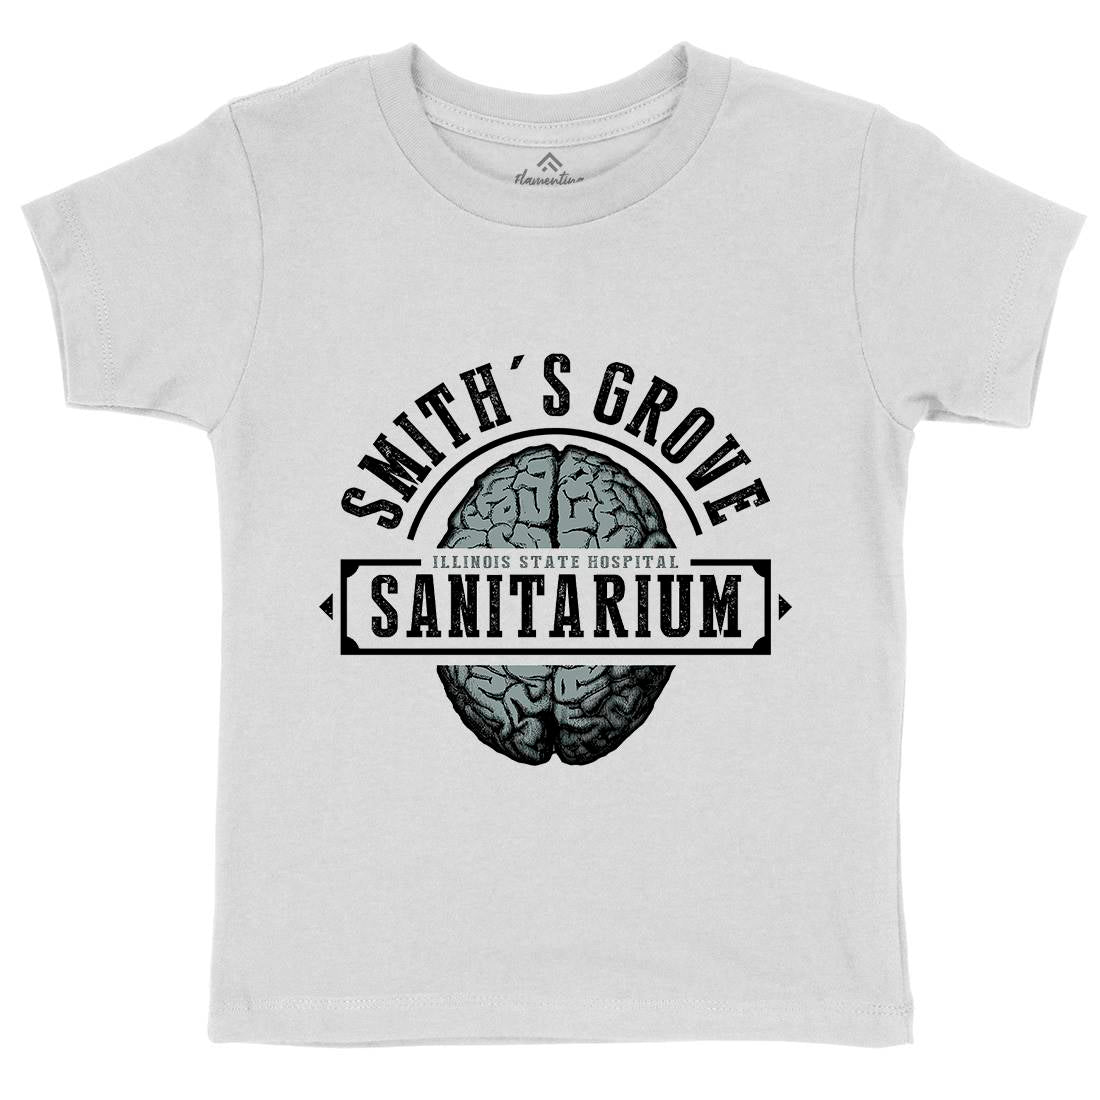 Smiths Grove Kids Organic Crew Neck T-Shirt Horror D331